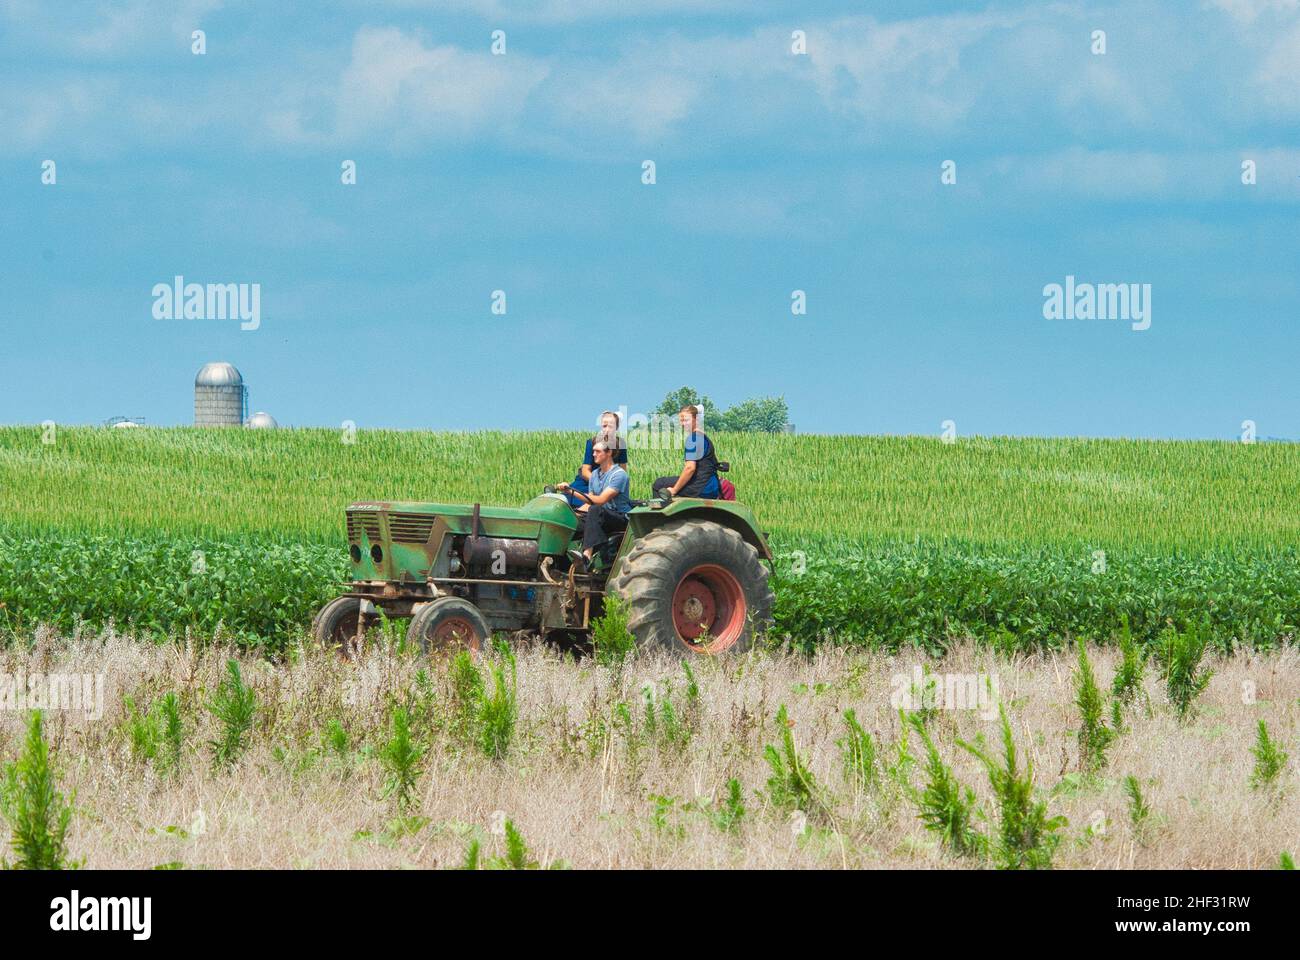 Ronks, Pennsylvania, Juli 2021 - Amish Boy und Girl Teenagers, die an einem Sommertag auf einem alten Traktor auf Ackerland reiten Stockfoto